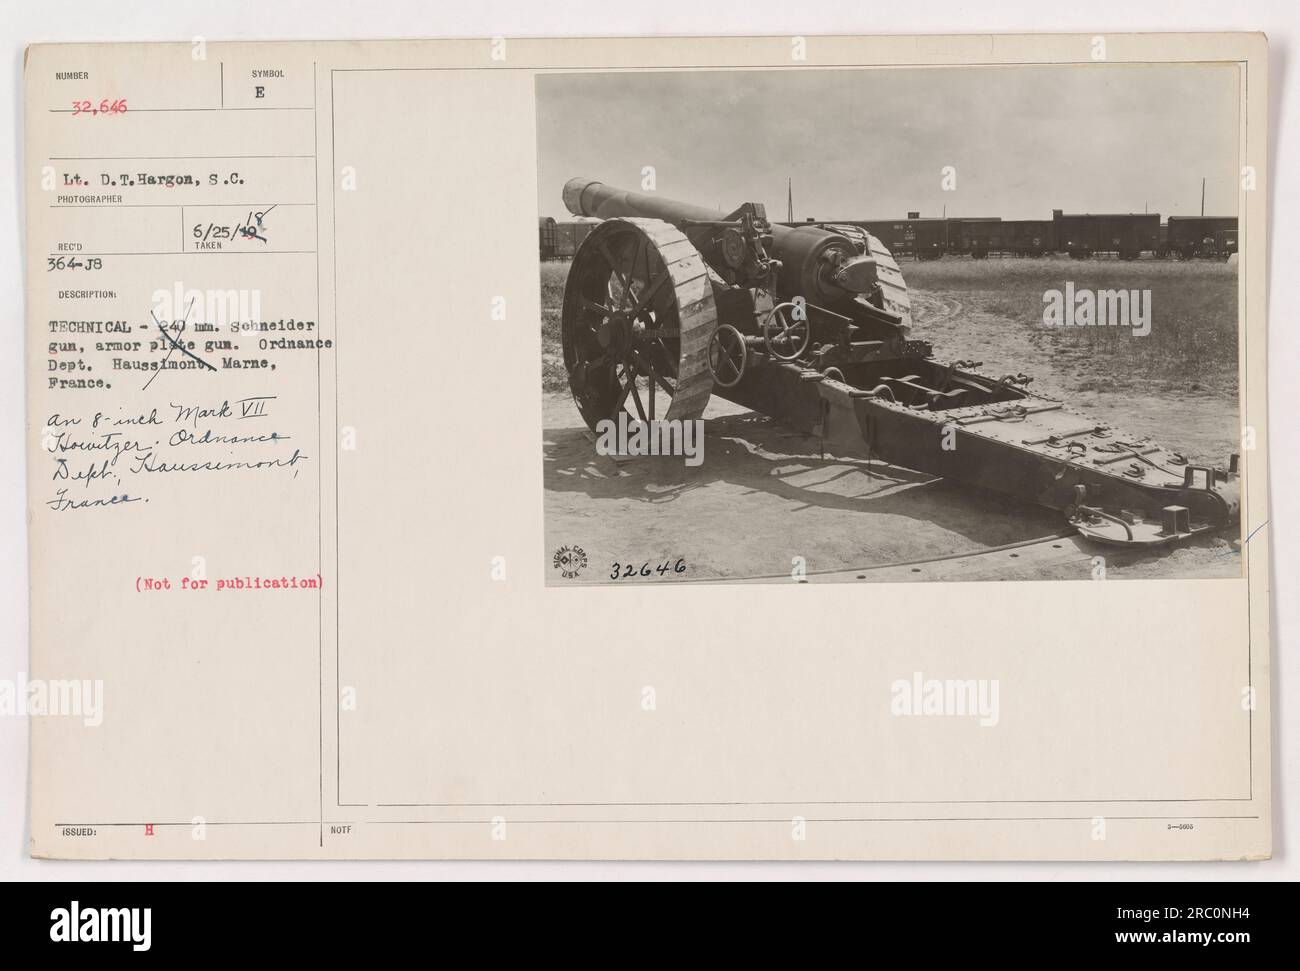 Amerikanische Soldaten bereiten einen 8 cm großen Mark VII Howitzer für den 1. Weltkrieg vor Dieses Foto wurde von LT. D. T. Hargon in Haussimont Marne, Frankreich, aufgenommen. Die Soldaten gehören dem Ordnance Department und werden dabei gesehen, wie sie die Schneider-Waffe handhaben, eine panzerbrechende Waffe. Stockfoto